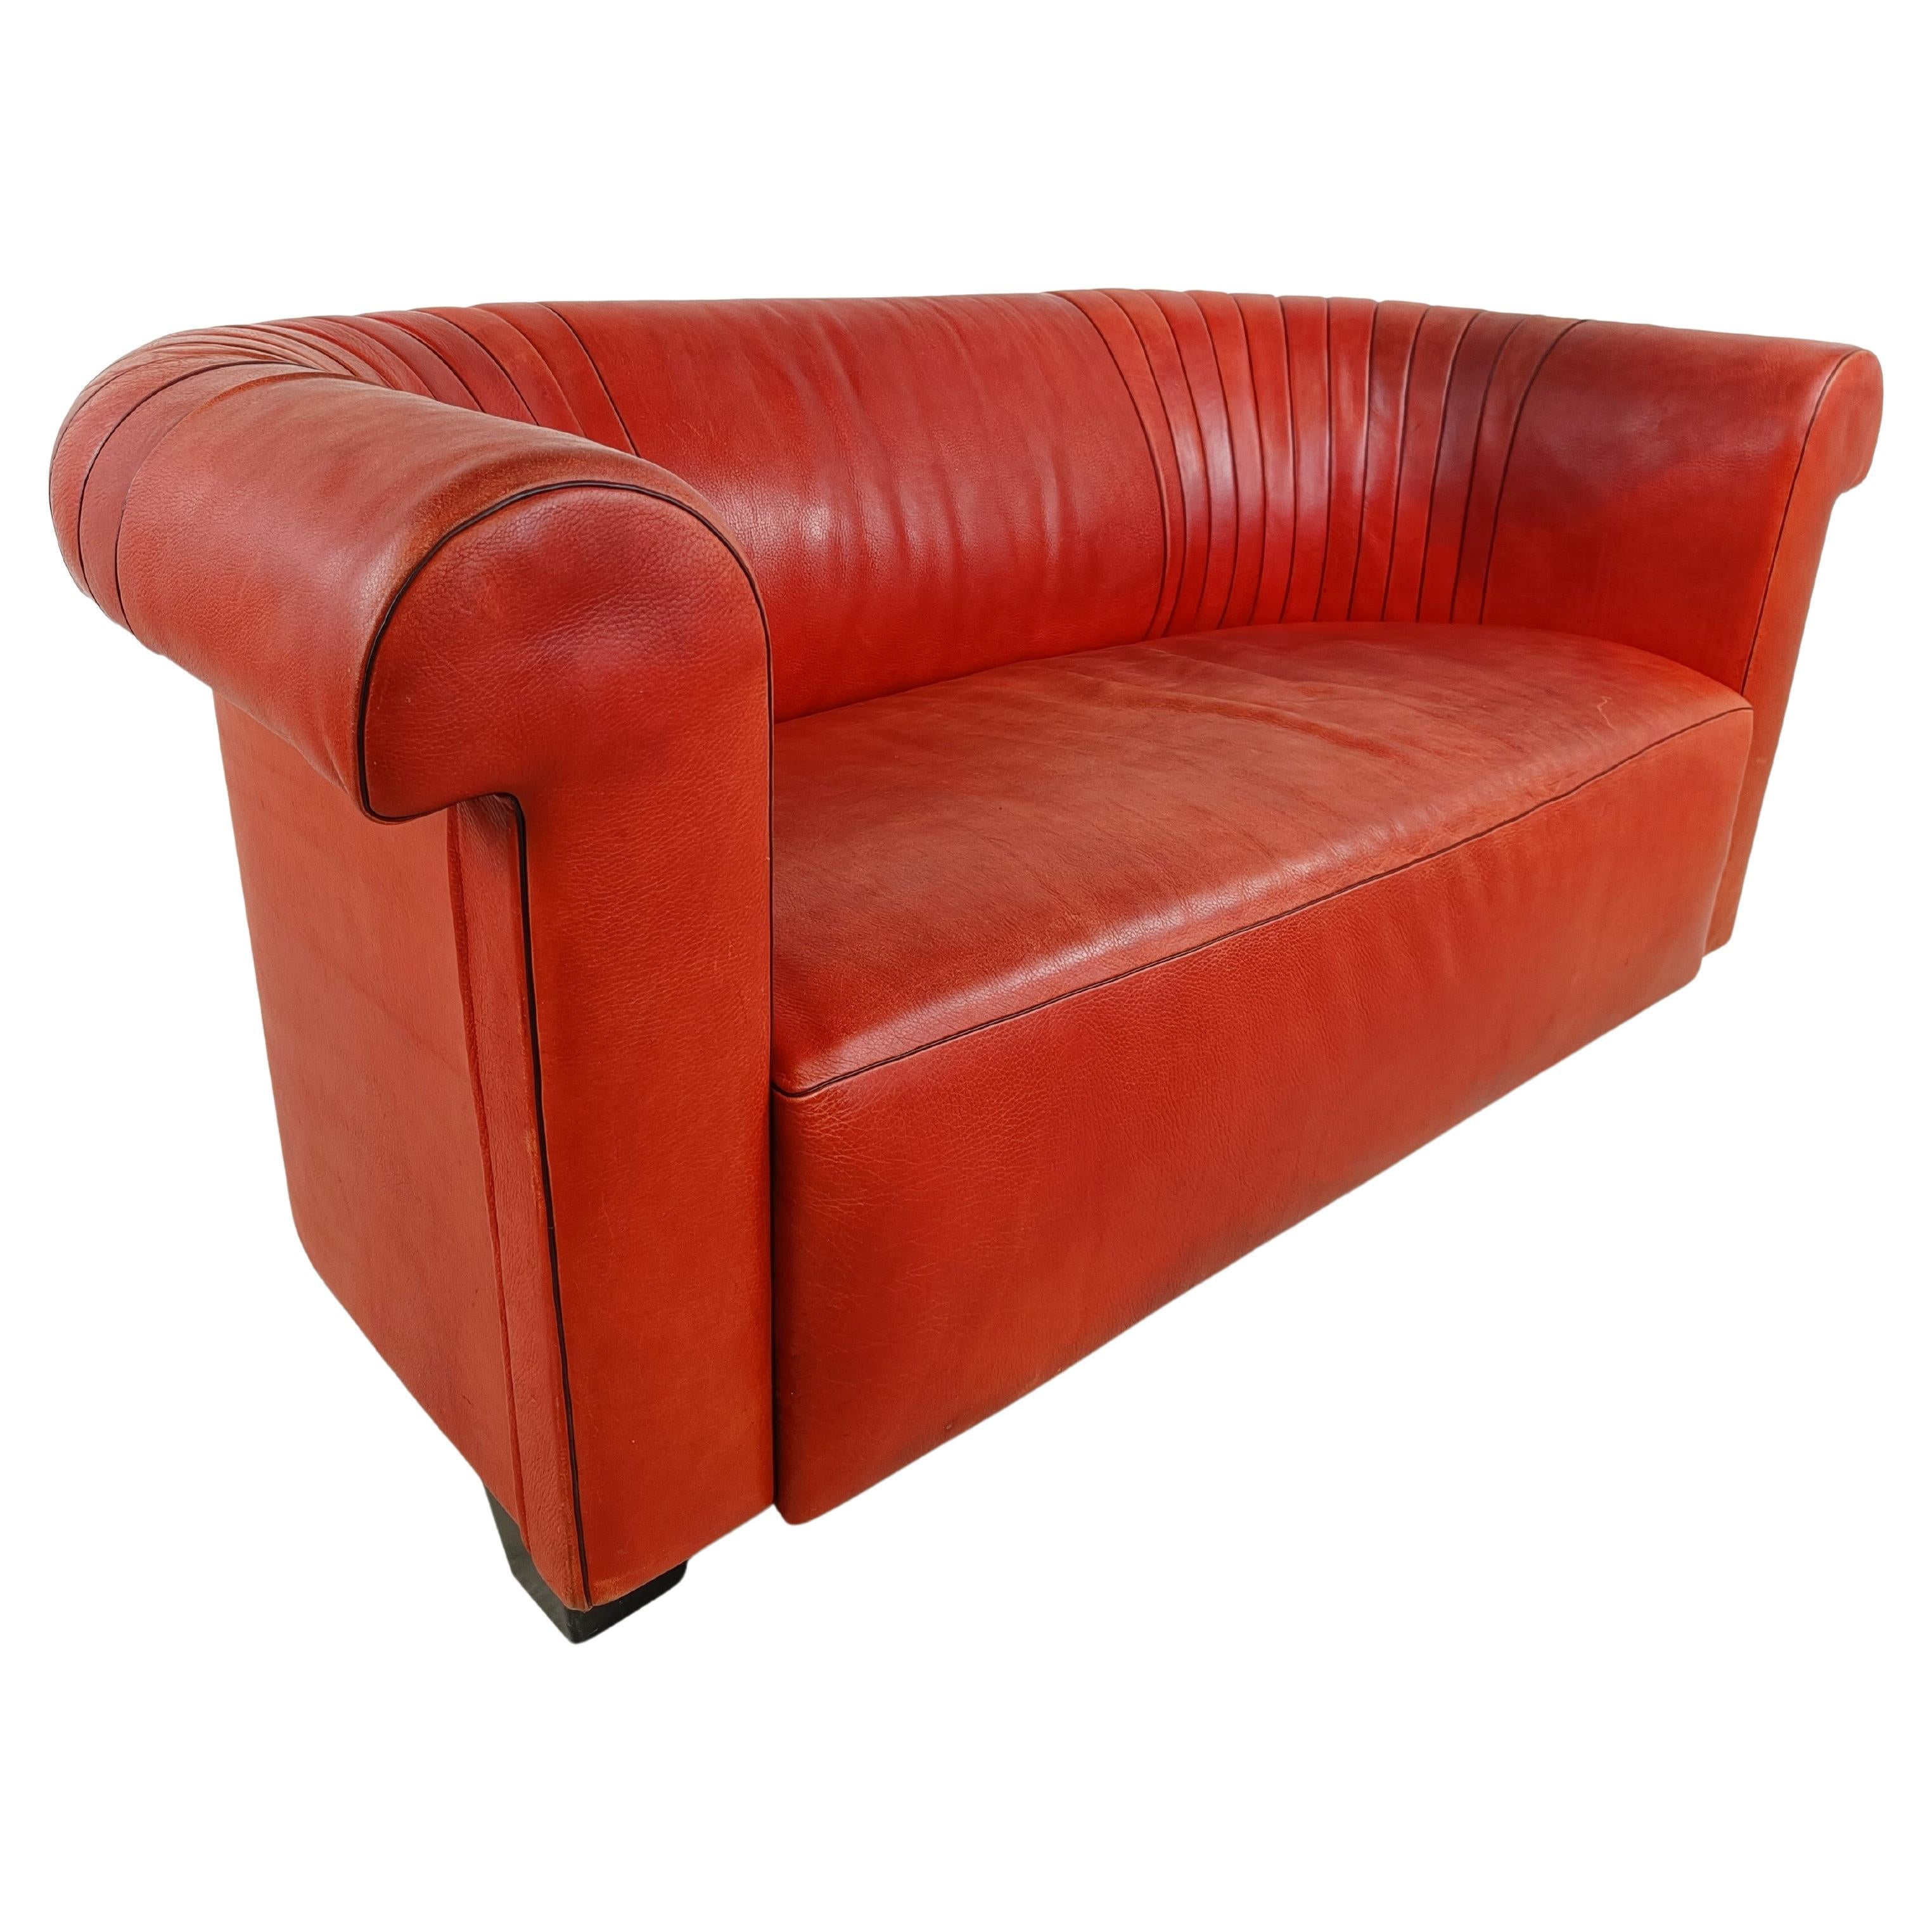 Canapé en cuir rouge par Desede, modèle DS700, années 1990 